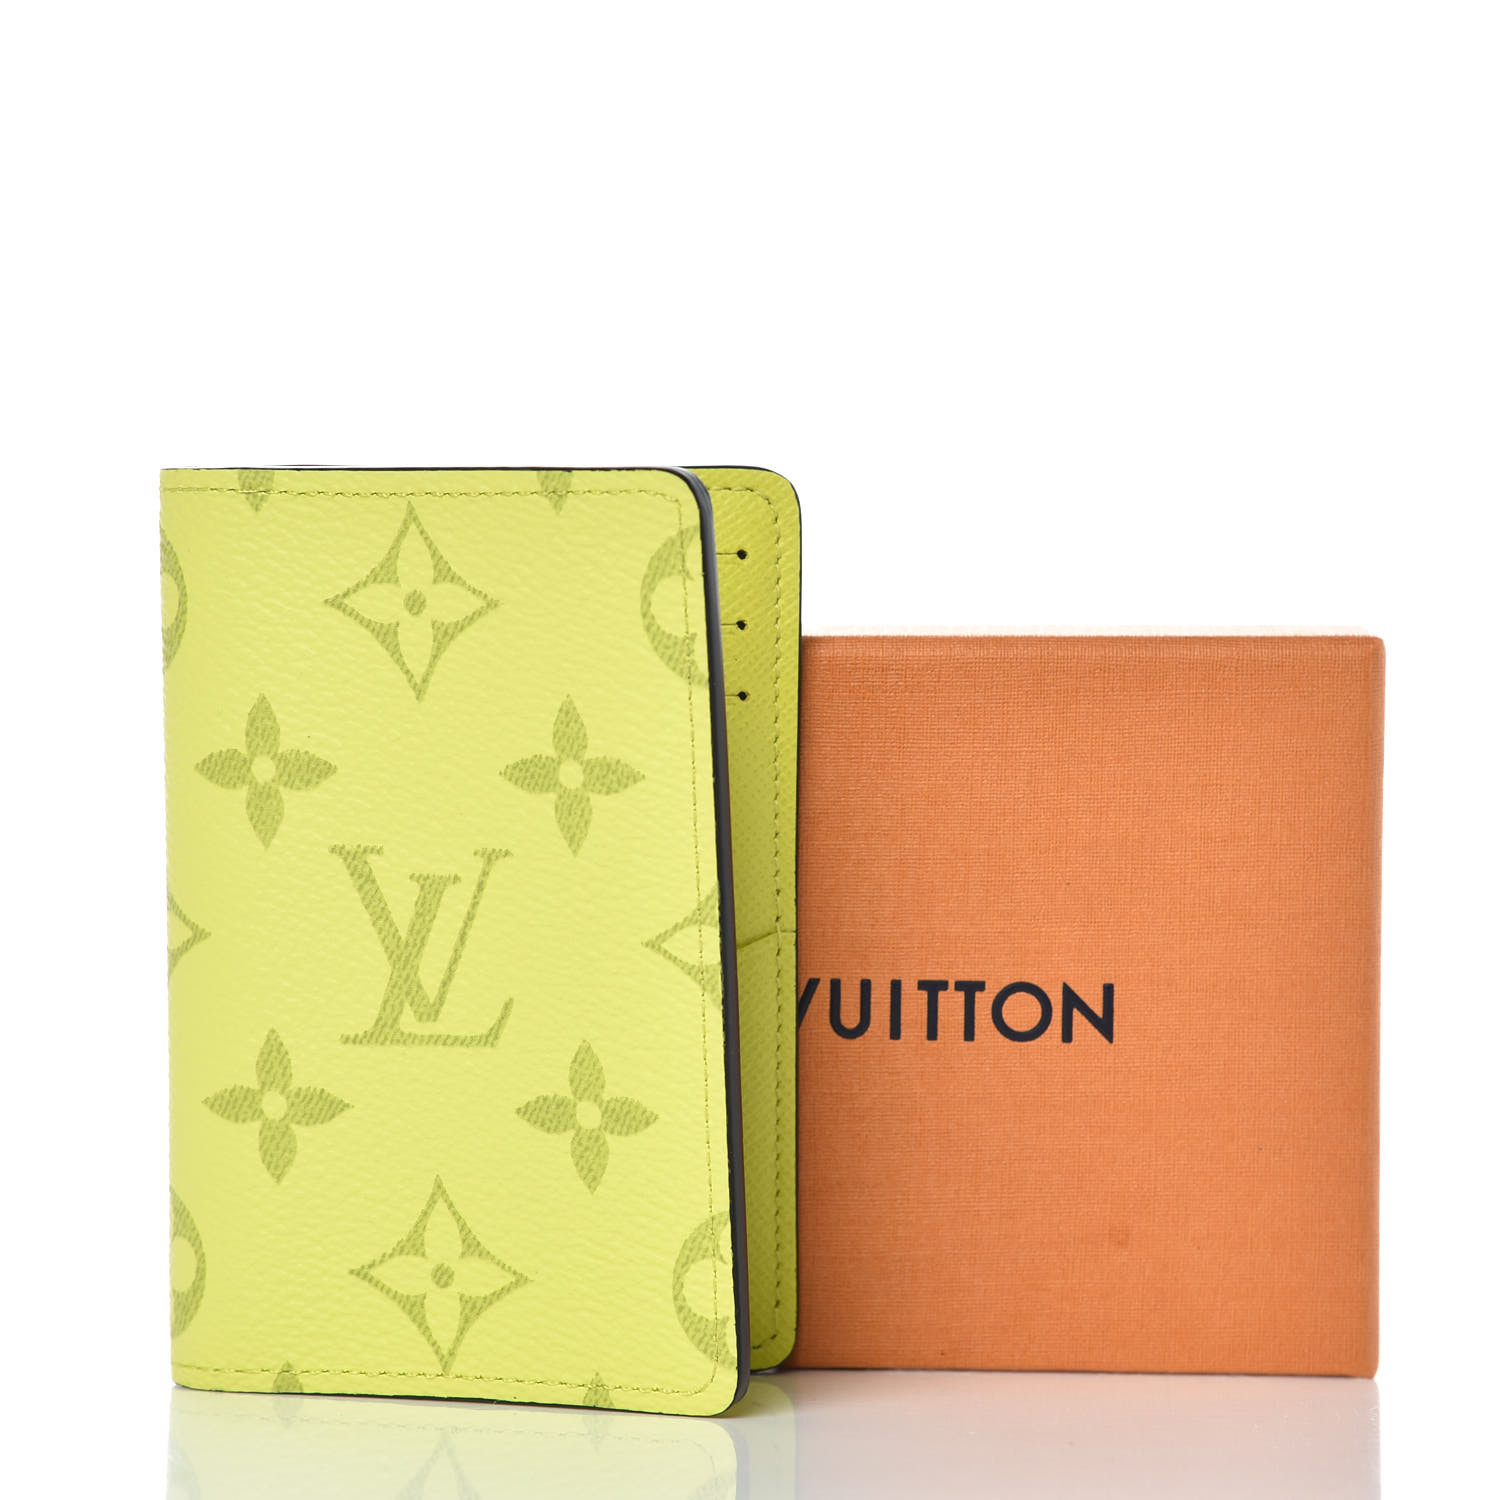 Pre-owned Louis Vuitton Pocket Organizer Monogram Bahia Yellow